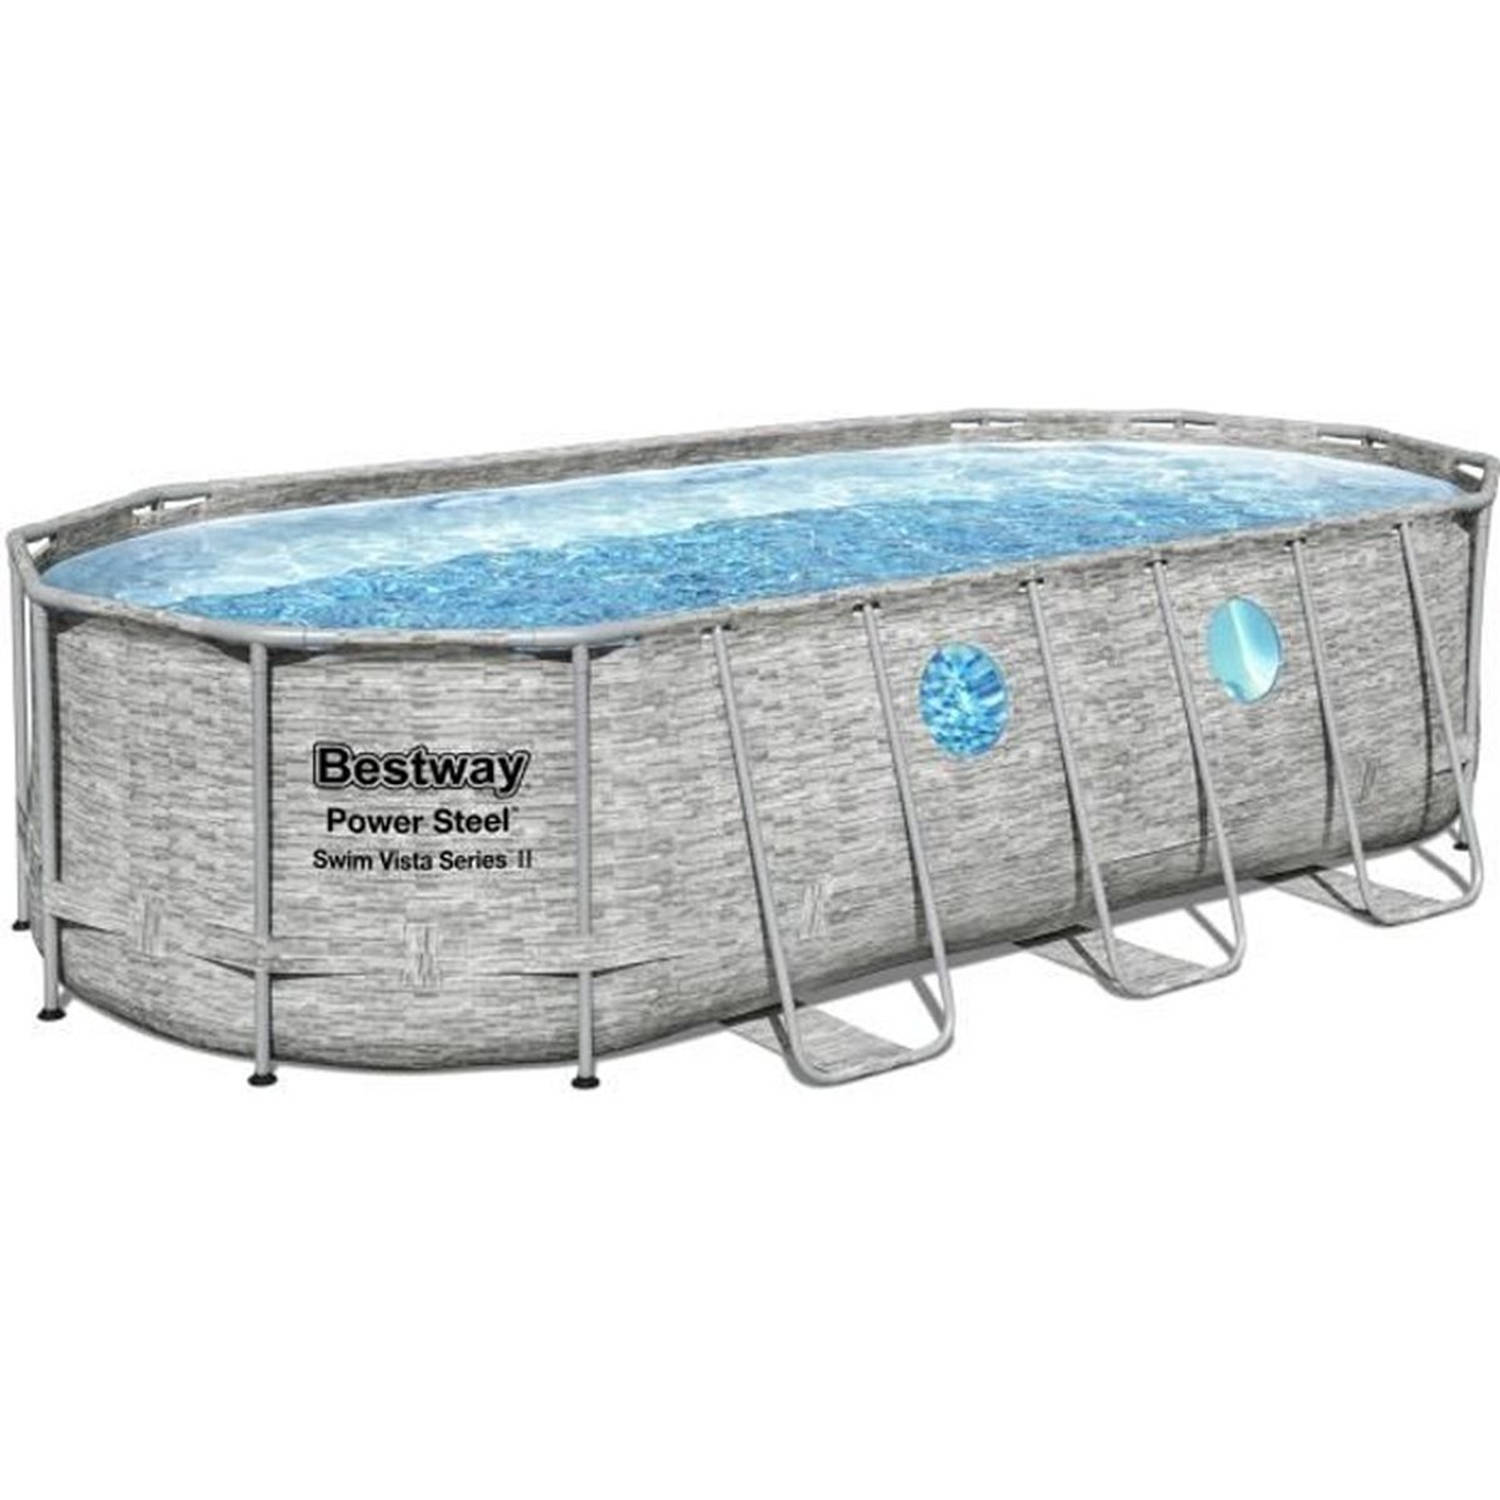 Kit voor bovengronds zwembad - BESTWAY - Power Steel - 549 x 274 x 122 cm - Ovaal (met filterpomp, ladder, deksel en diffuser)